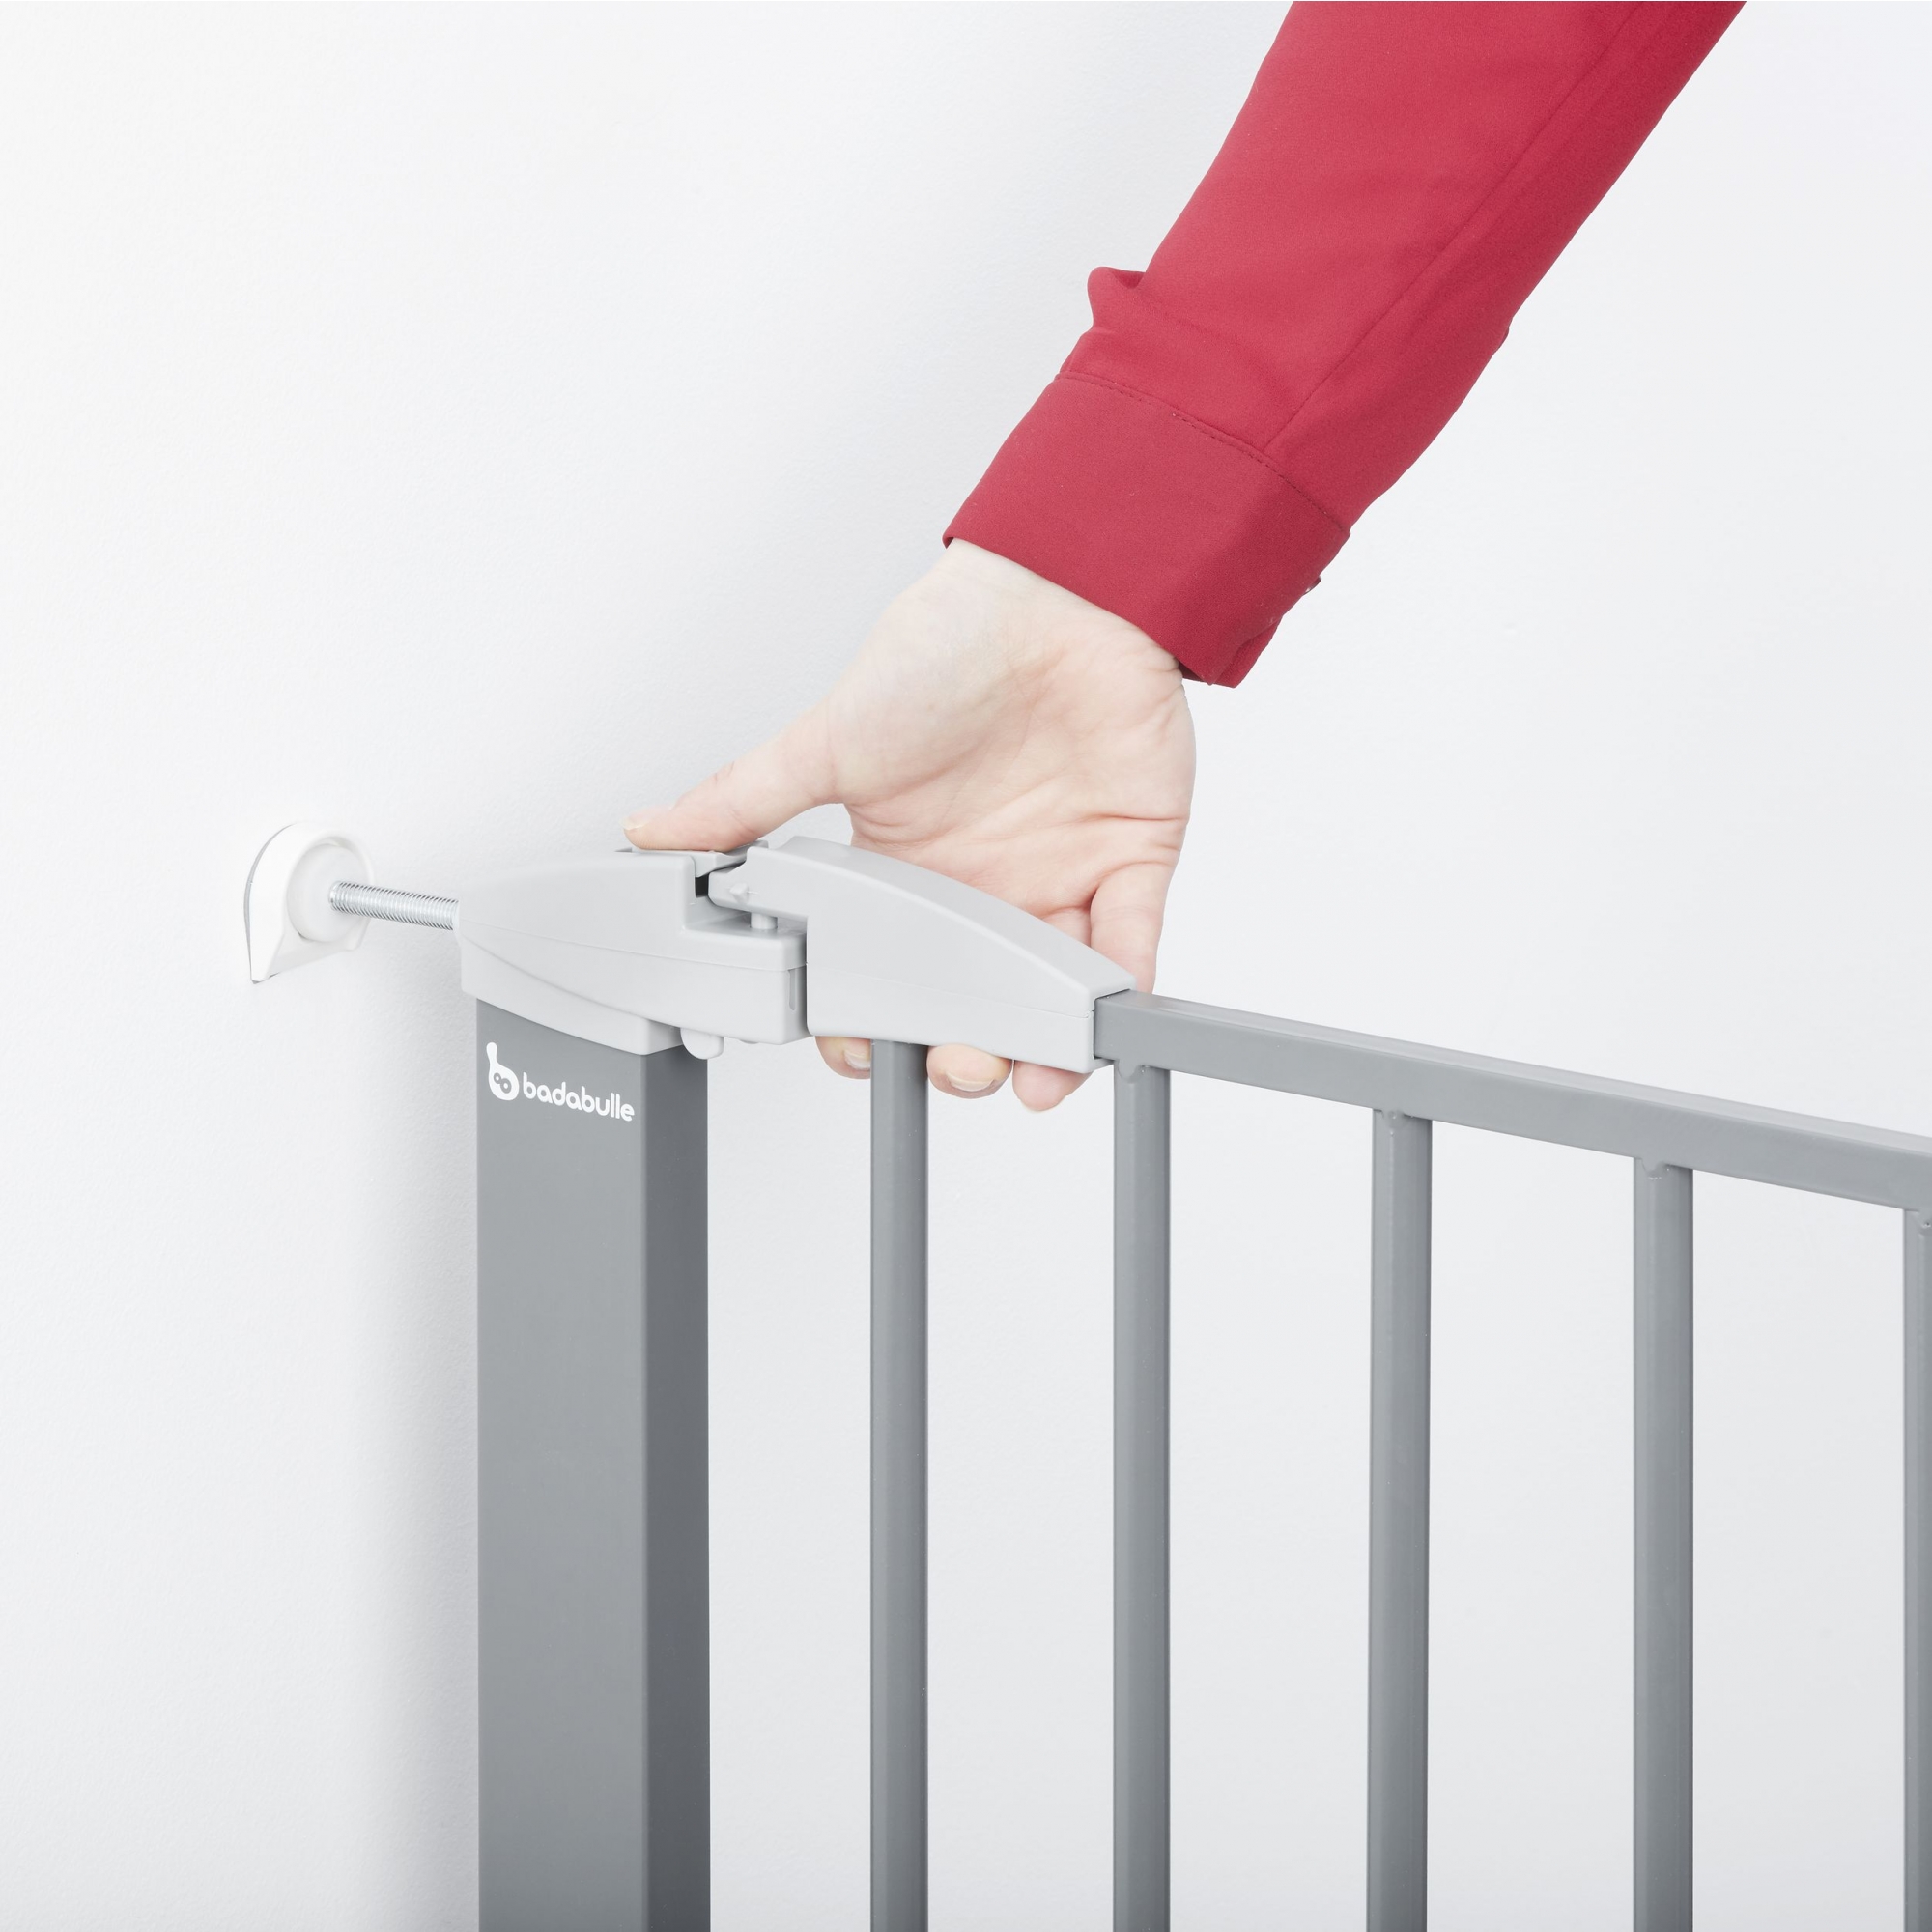 Barrière escalier - découvrez les possibilités pour sécuriser votre escalier